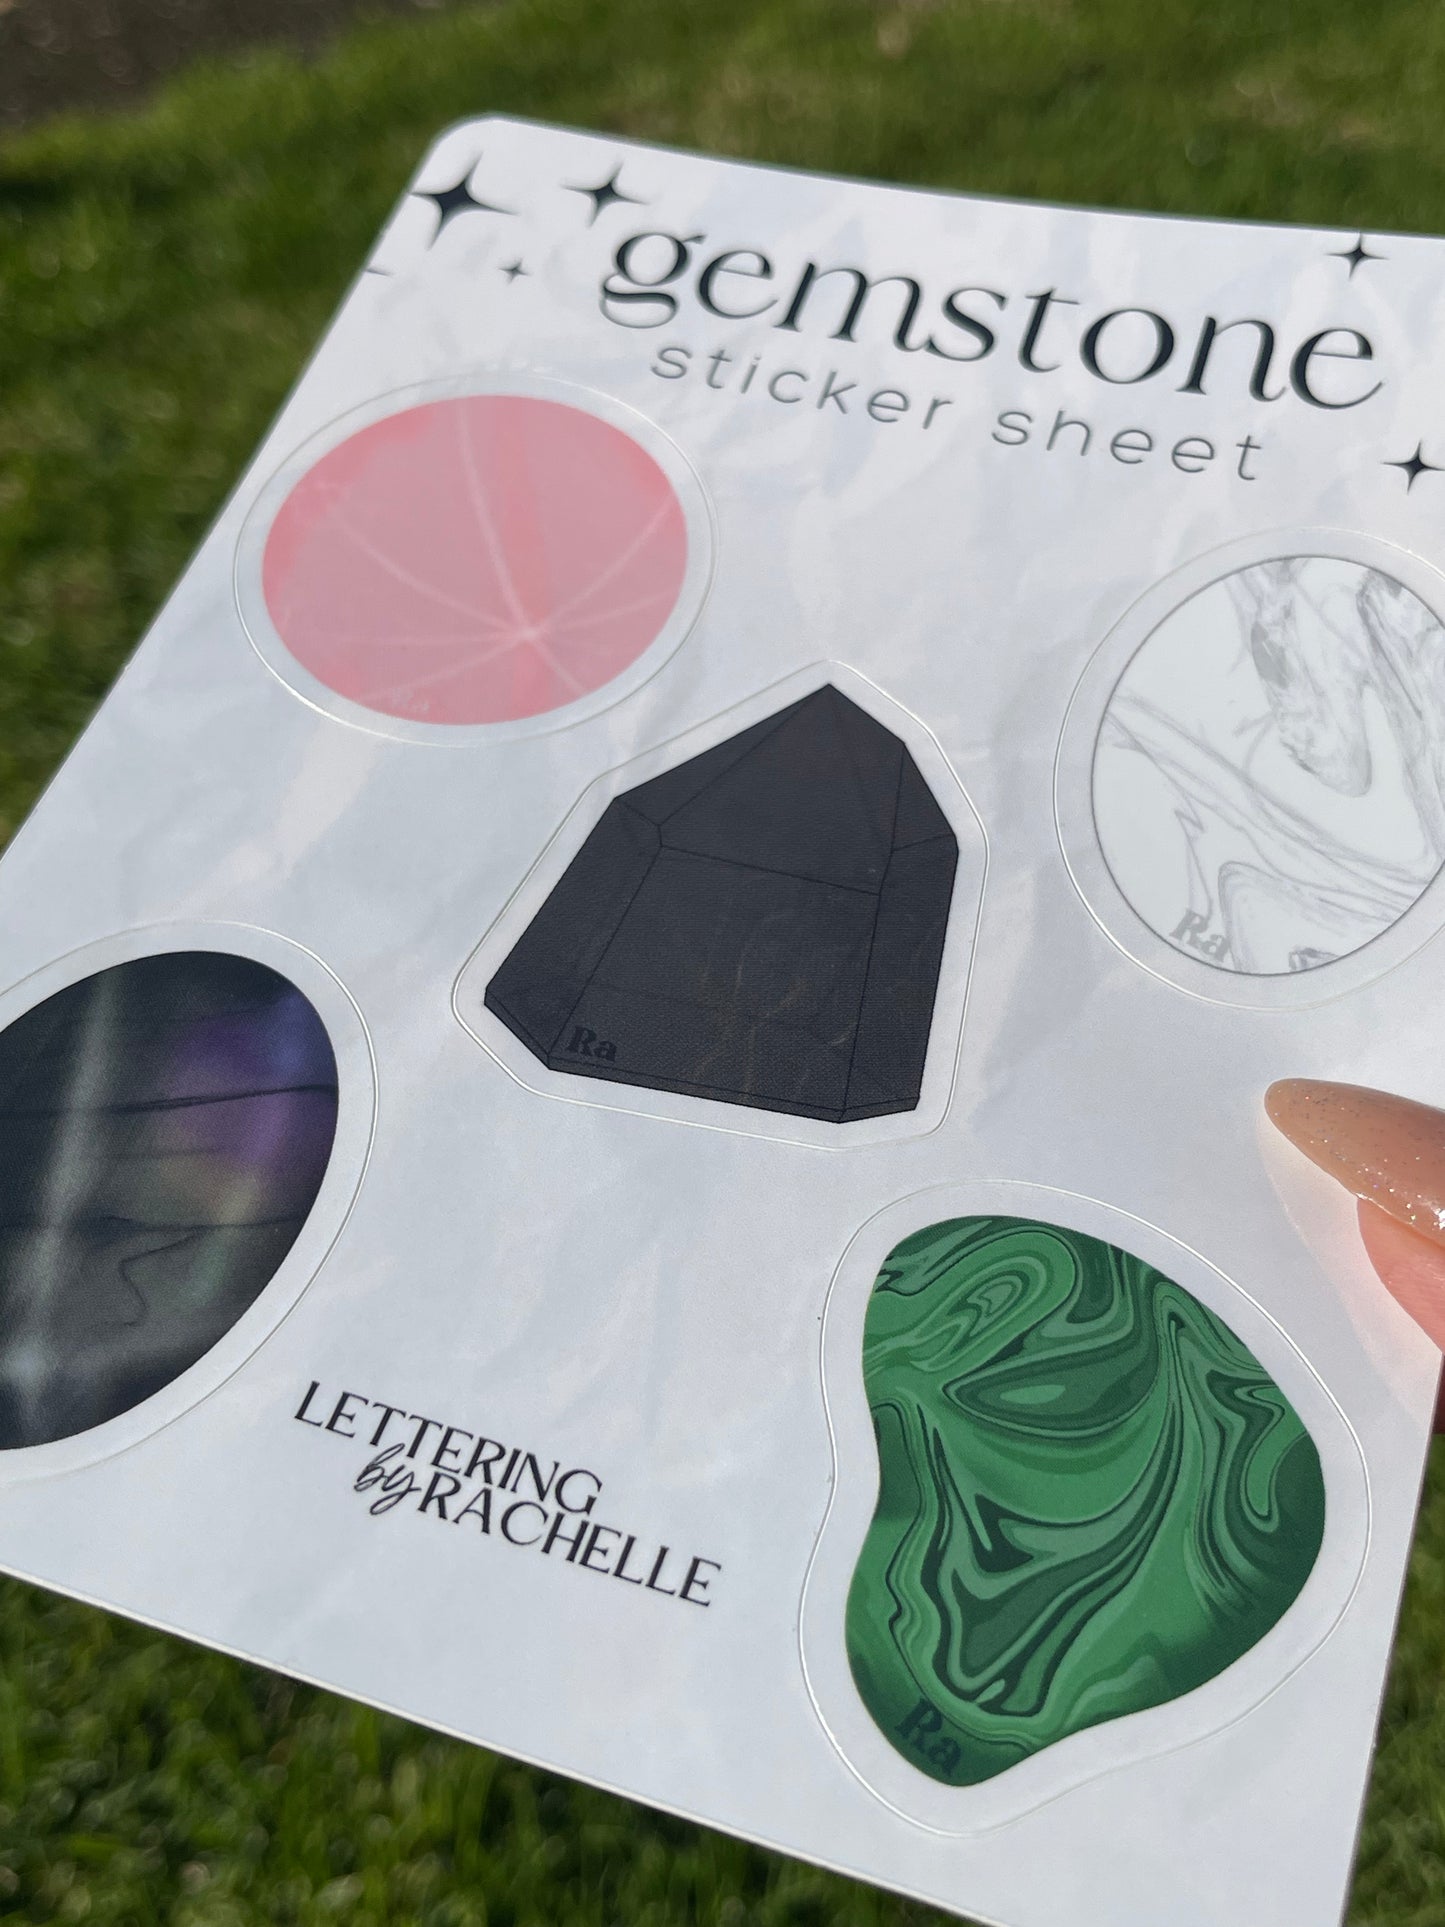 Gemstone sticker sheet - rose quartz, labradorite, malachite, howlite, smoky quartz sticker